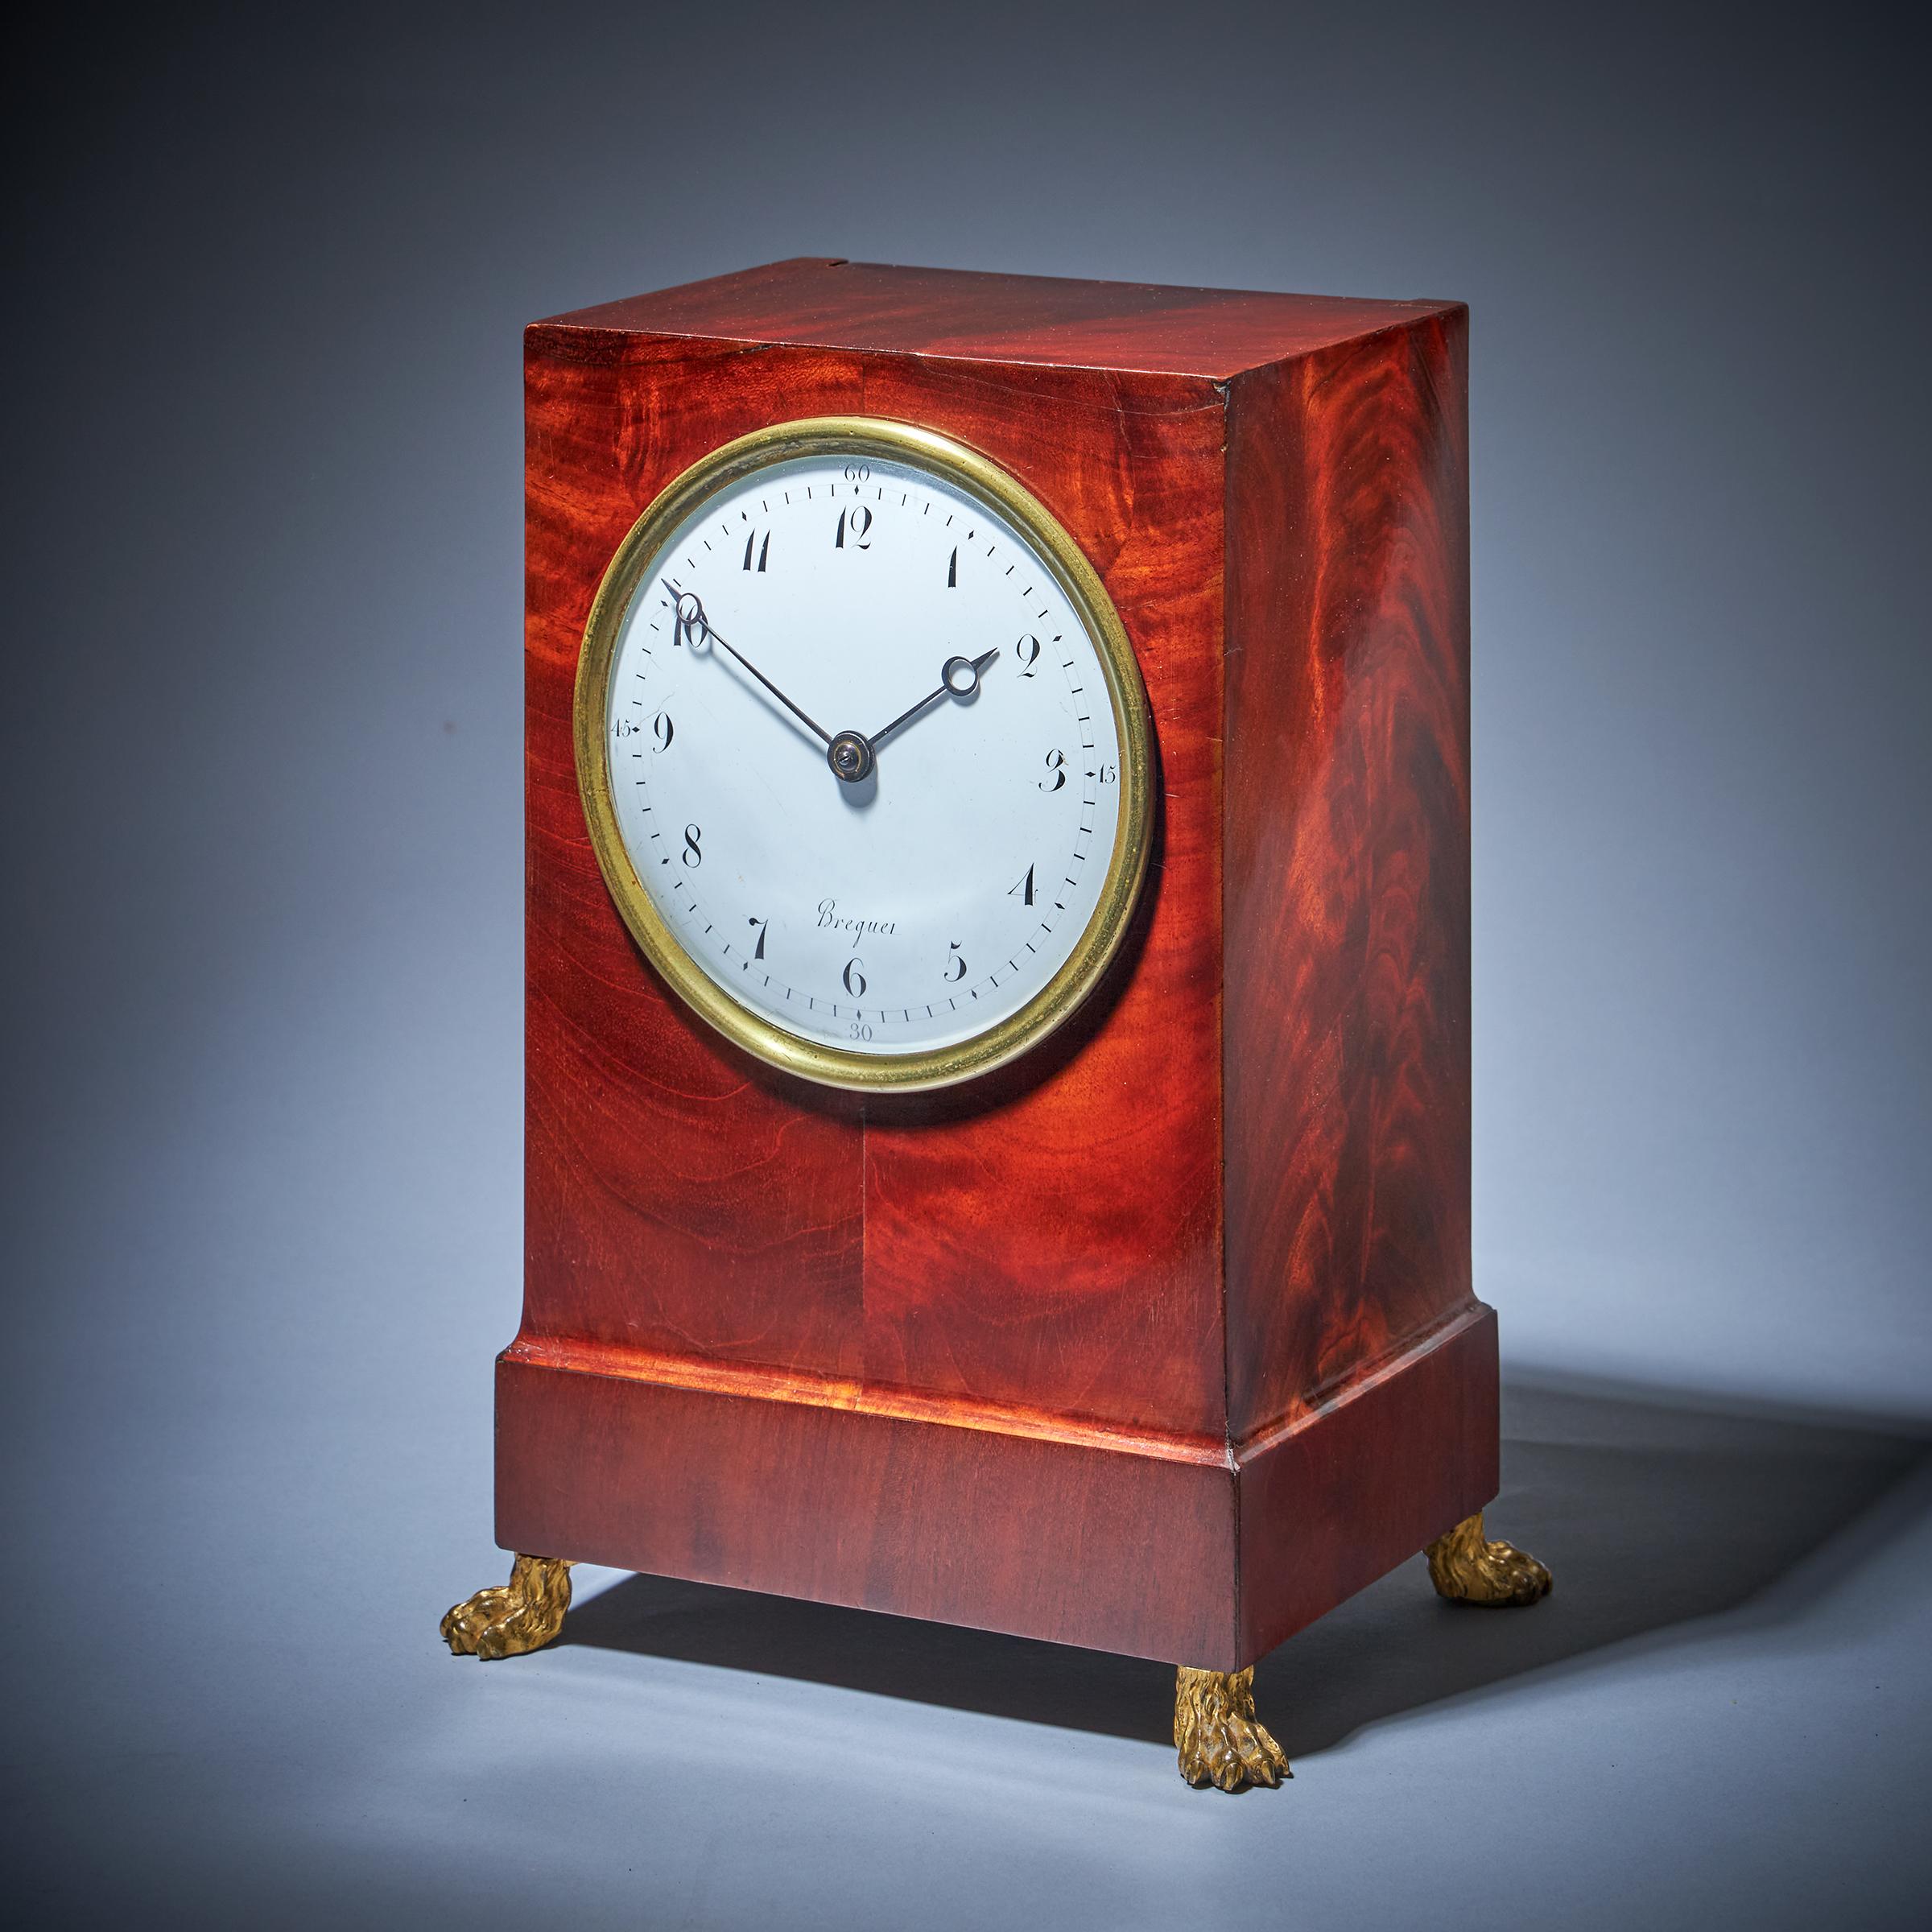 Rarissime pendule de cheminée à boîtier plaqué d'acajou figuré de A-L Breguet
 
Abraham-Louis Breguet (1747-1823), d'origine suisse, est sans doute l'horloger le plus célèbre de la fin du XVIIIe siècle et du début du XIXe siècle en France. On lui